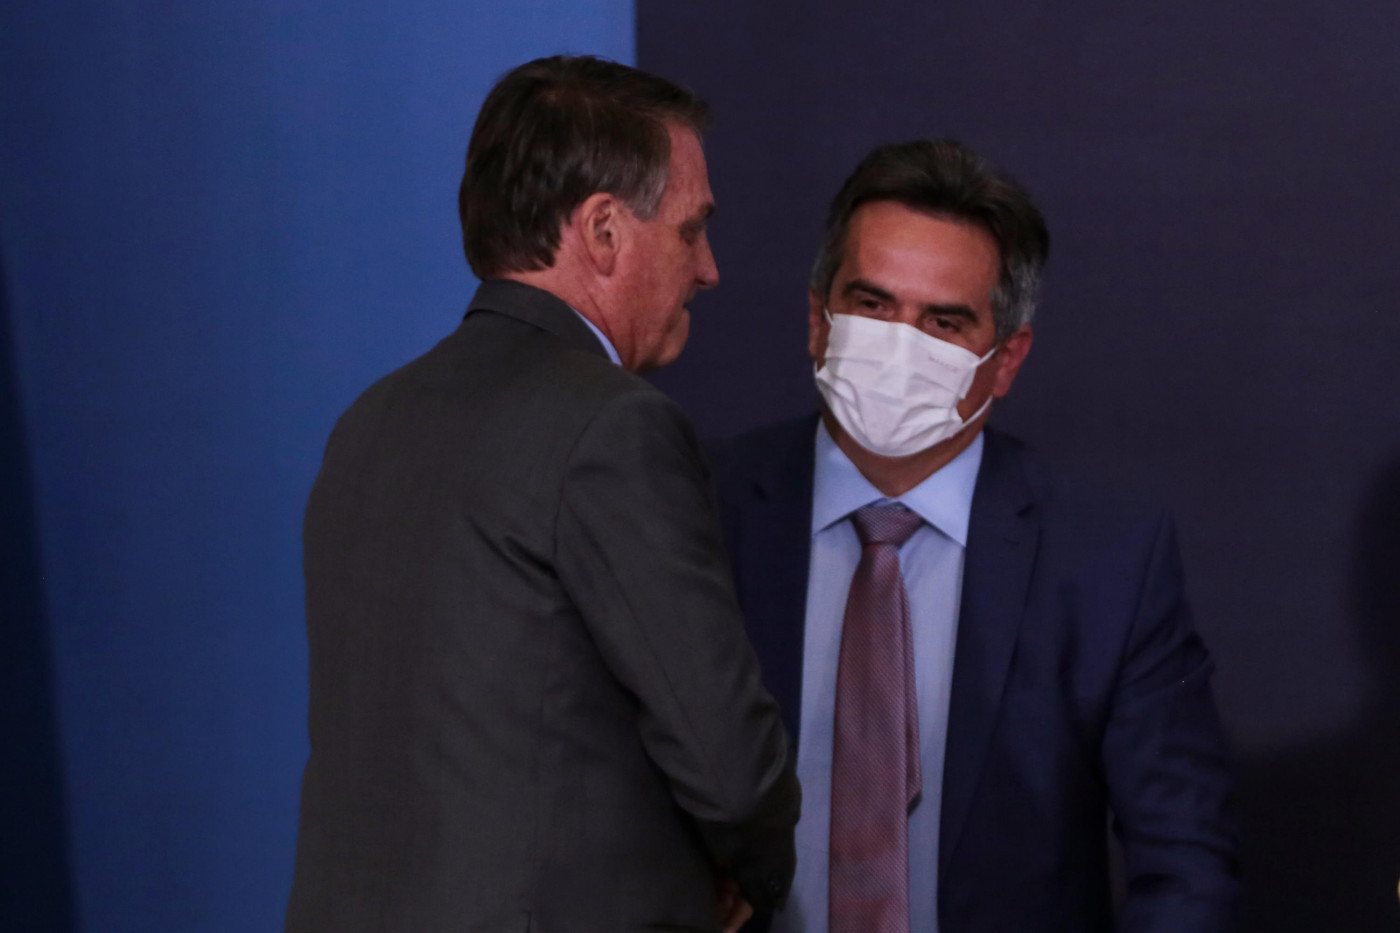 De costas, o presidente Jair Bolsonaro cumprimenta Ciro Nogueira, novo chefe da Casa Civil; ambos usam trajes sociais